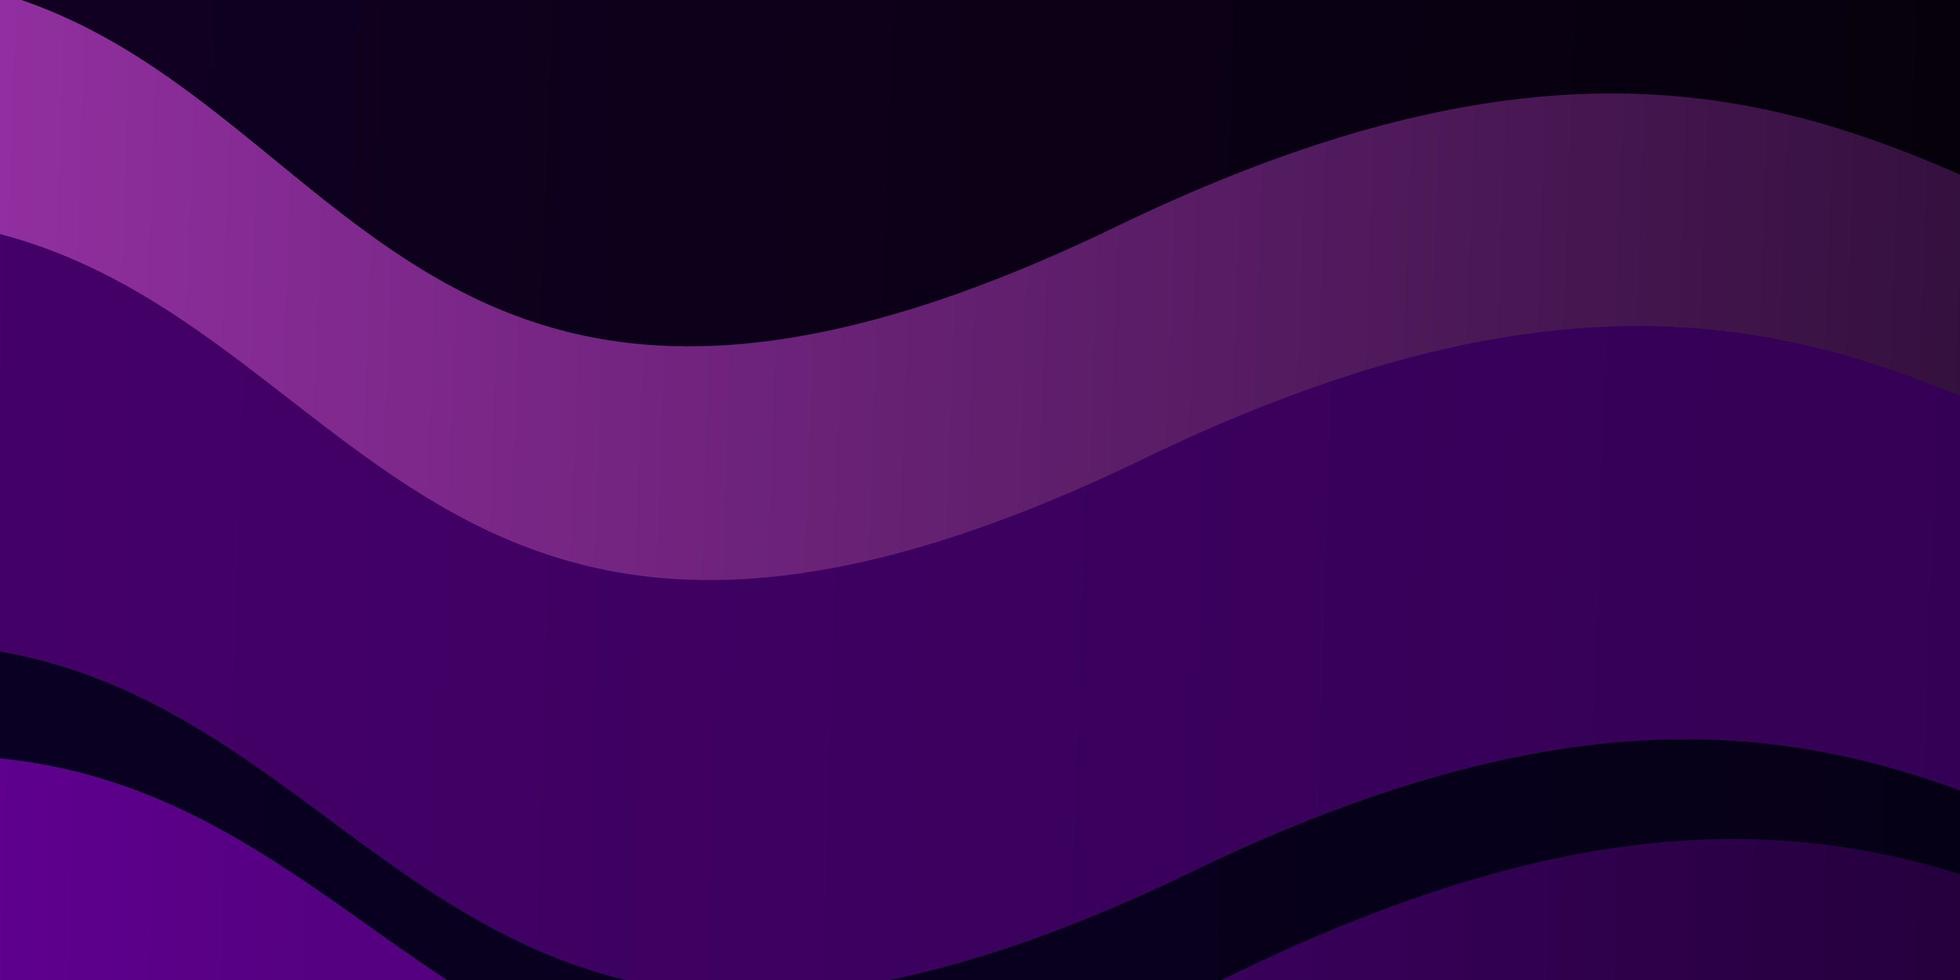 sfondo vettoriale viola scuro con linee curve illustrazione colorata in stile astratto con modello di linee piegate per cellulari